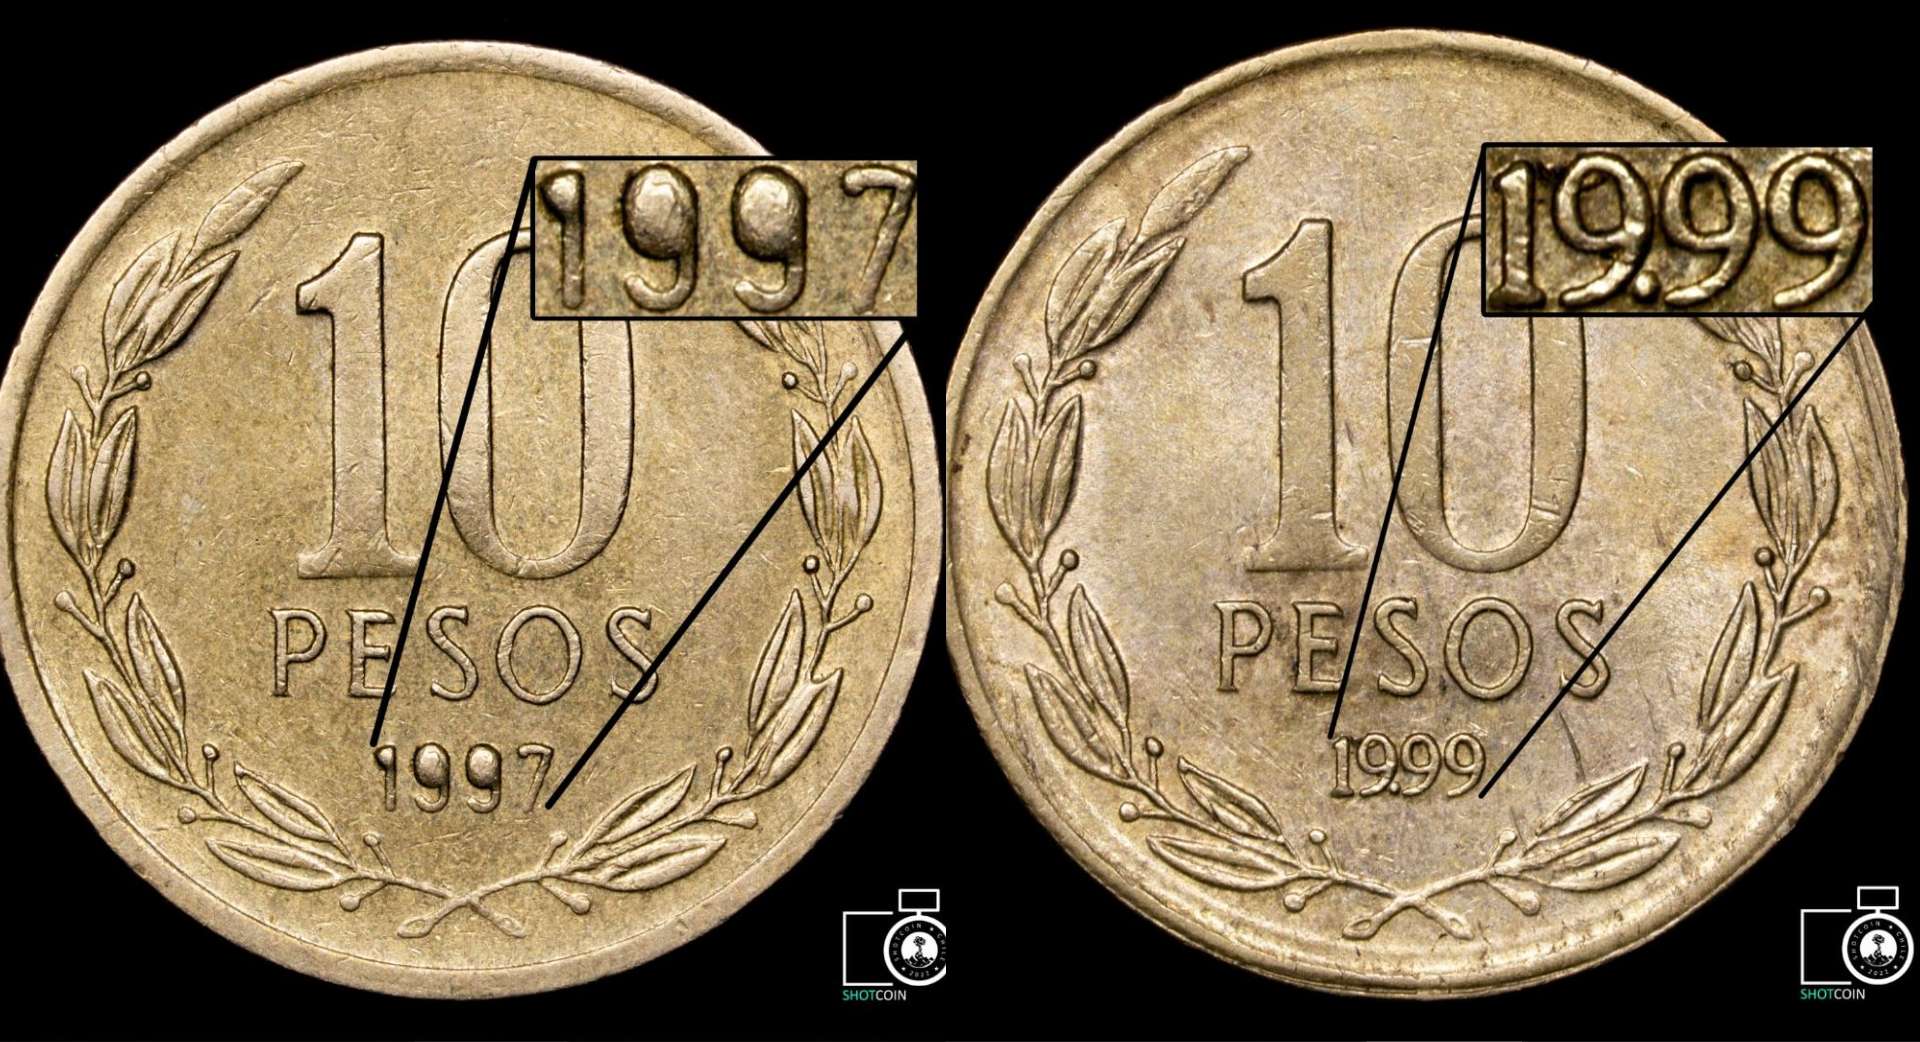 Moneda de 1997 con los 